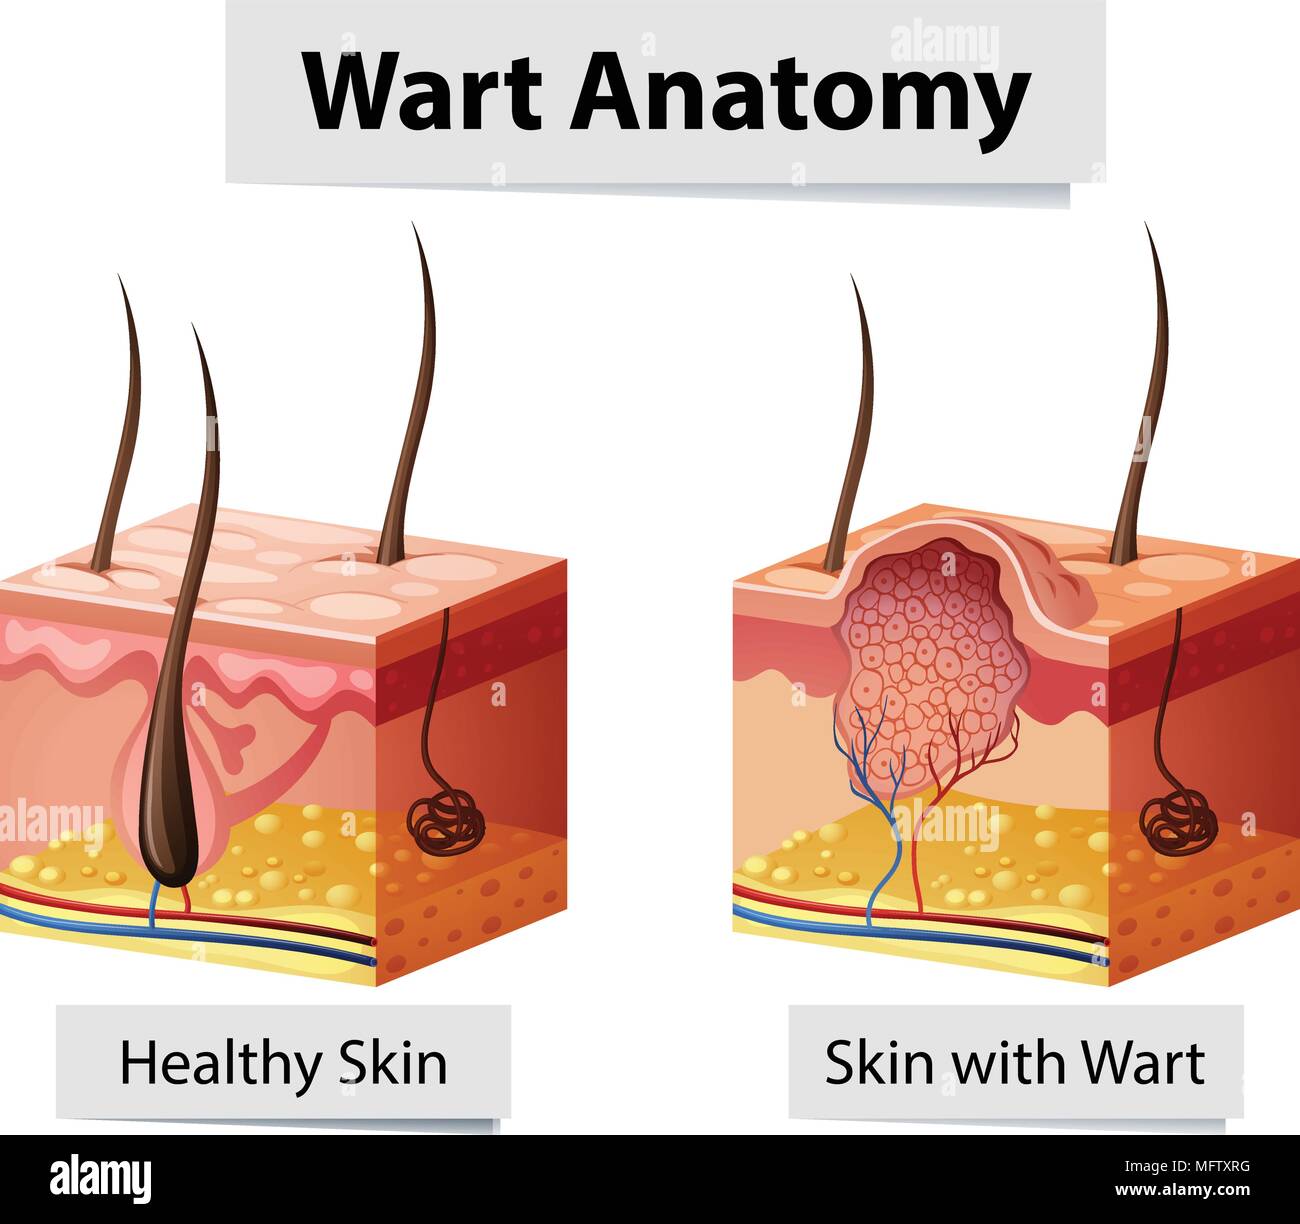 Wart Human Skin Anatomy Illustration illustration Stock Vector